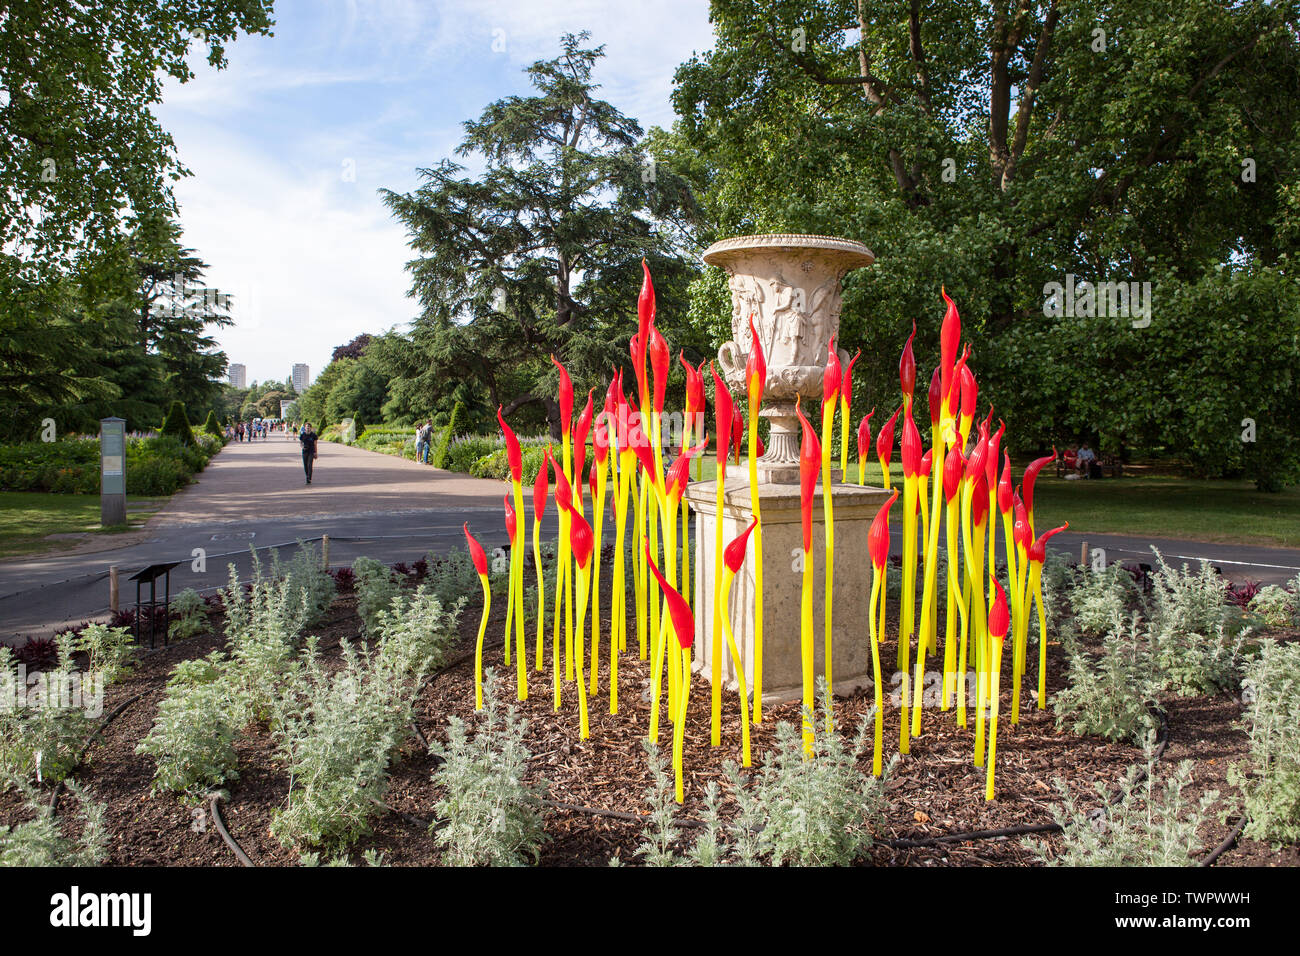 Pinceles es una escultura en vidrio contemporáneo USA artista Dale Chihuly, situado en el extremo de la Gran Caminata en los Jardines de Kew, Richmond, Londres. Foto de stock